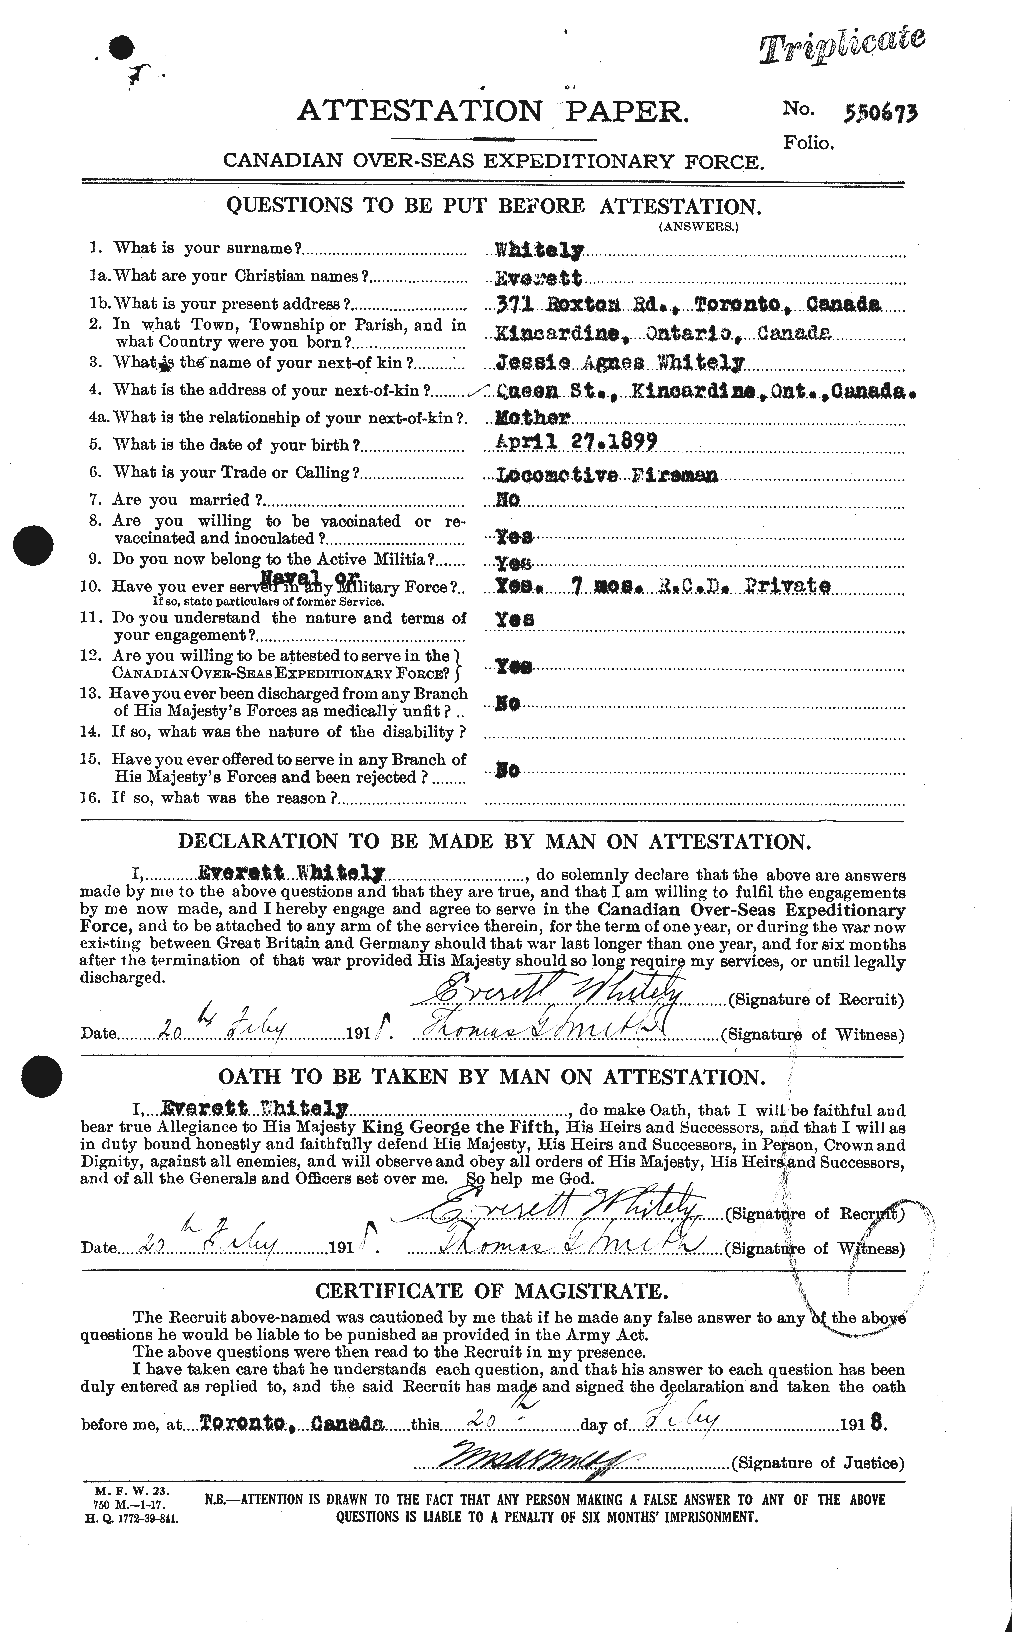 Dossiers du Personnel de la Première Guerre mondiale - CEC 671176a